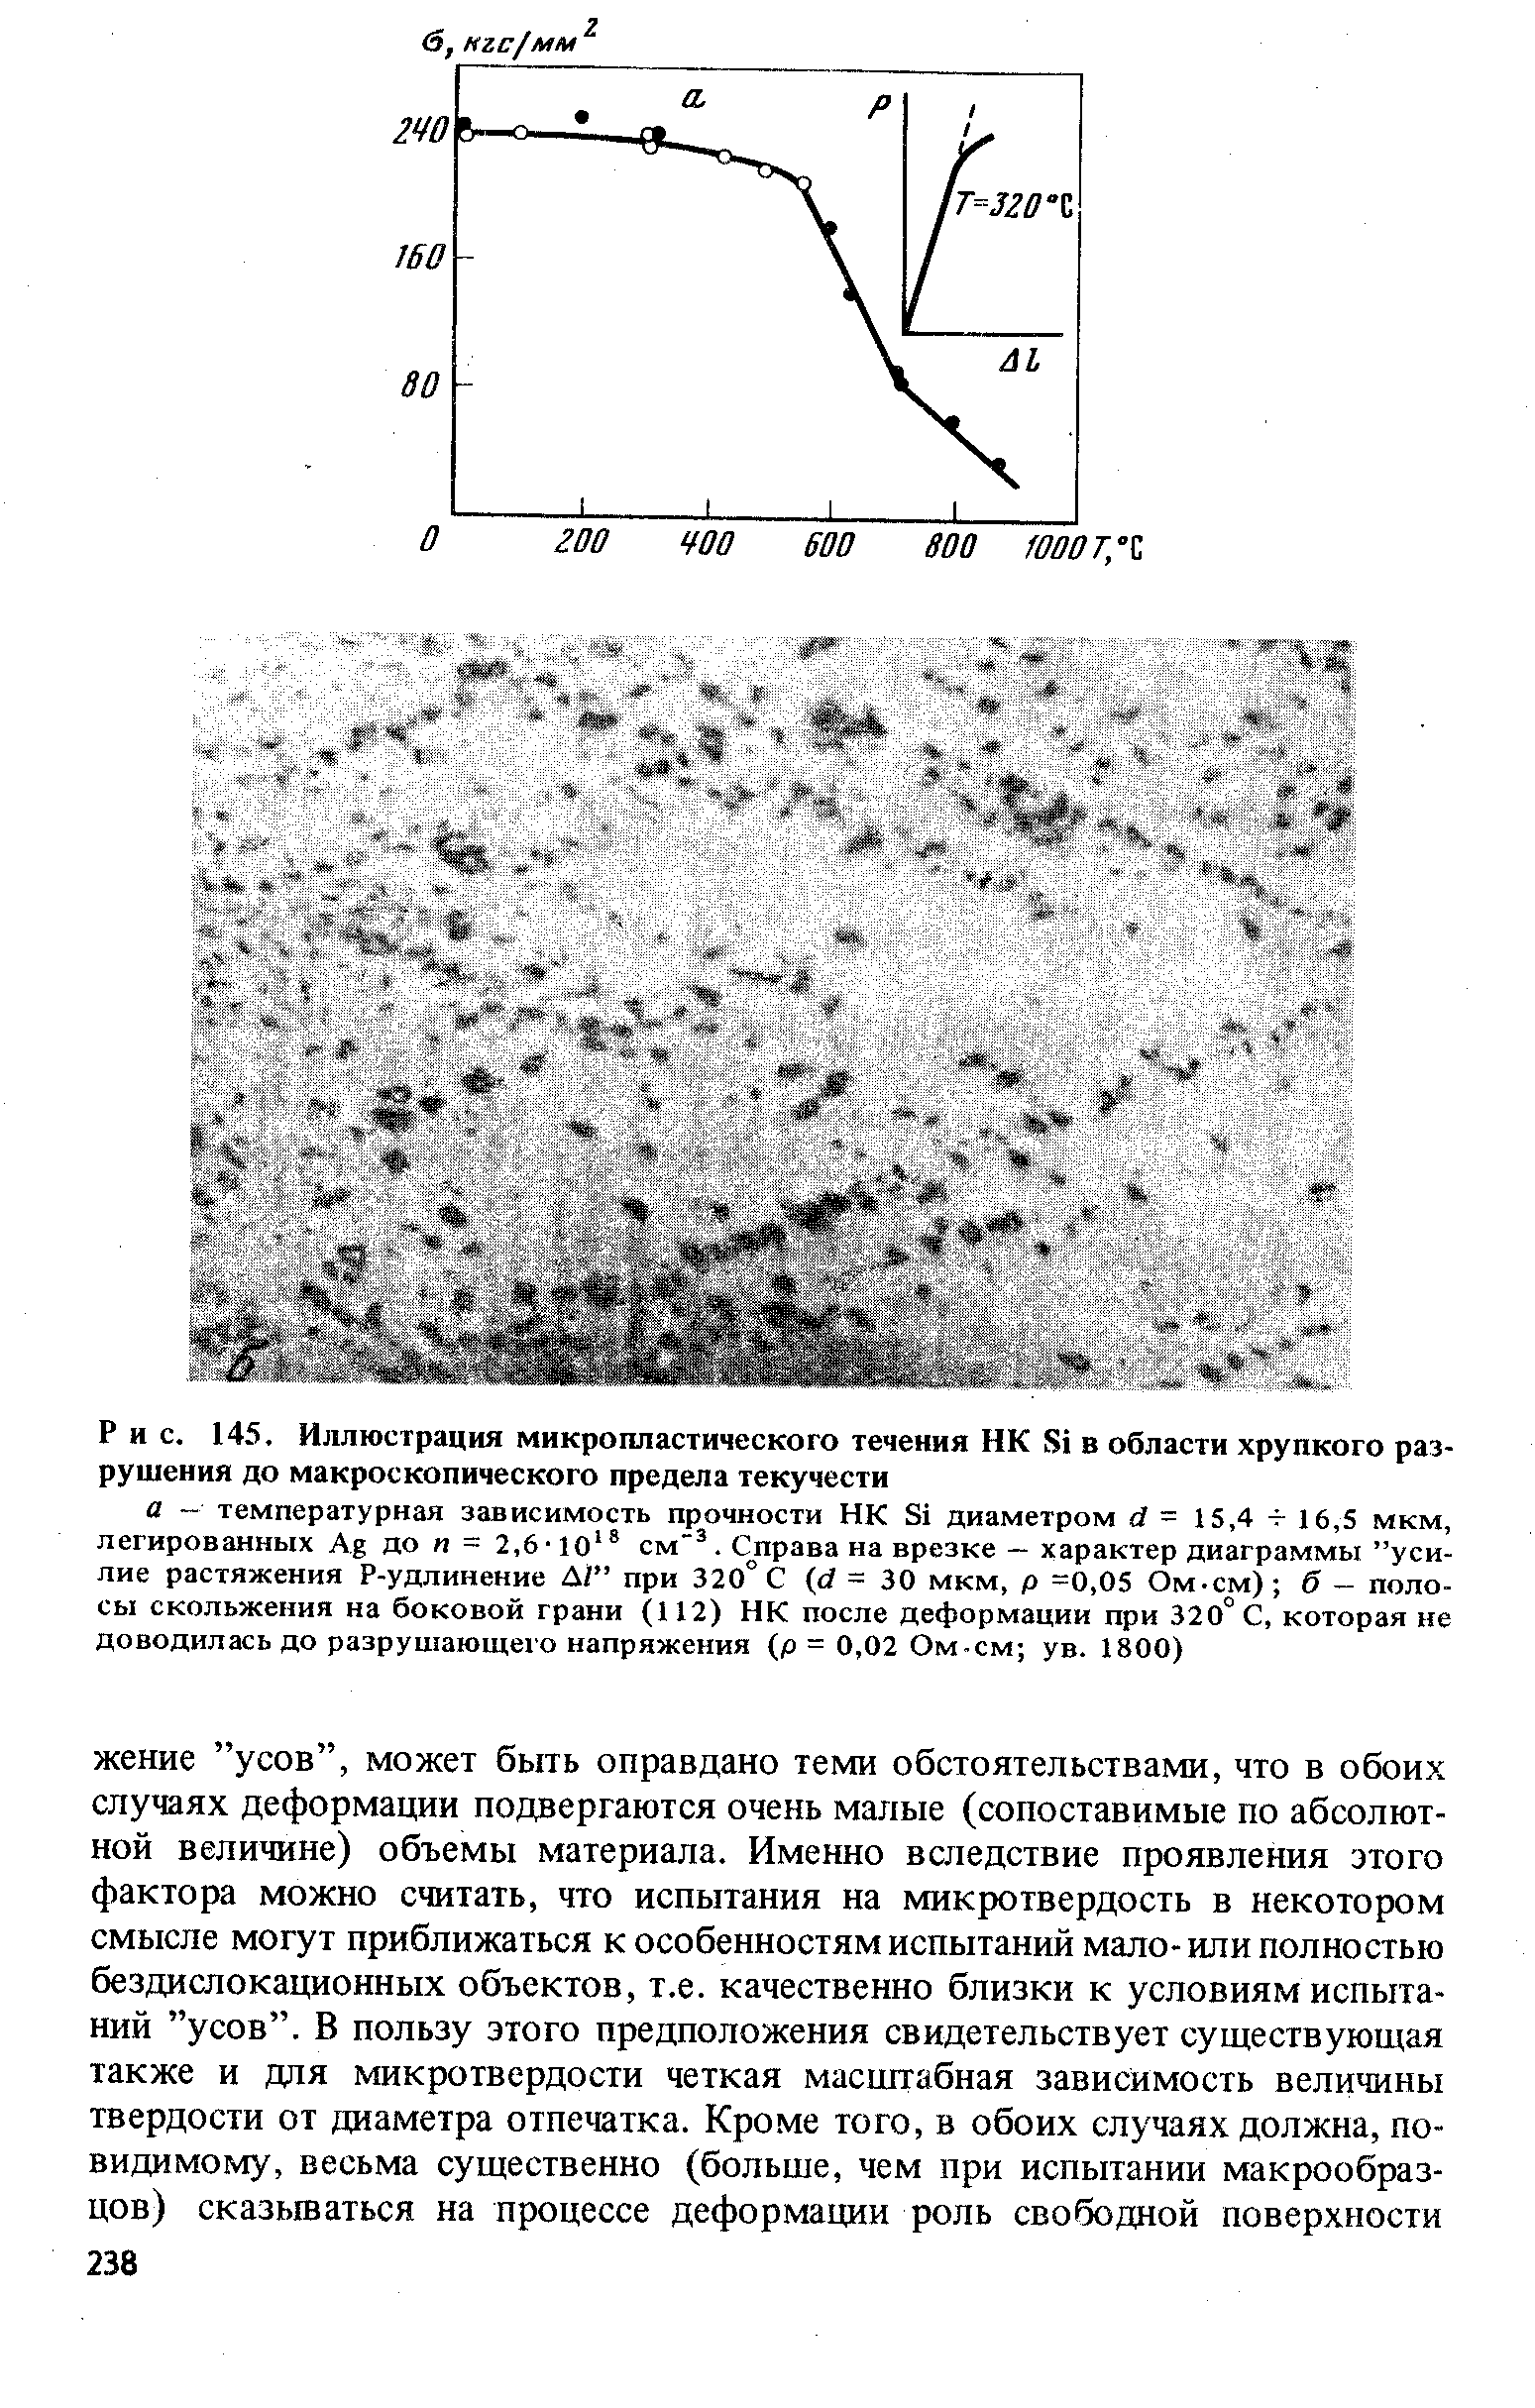 Рис. 145. Иллюстрация микропластического течения НК Si в области хрупкого разрушения до макроскопического предела текучести
